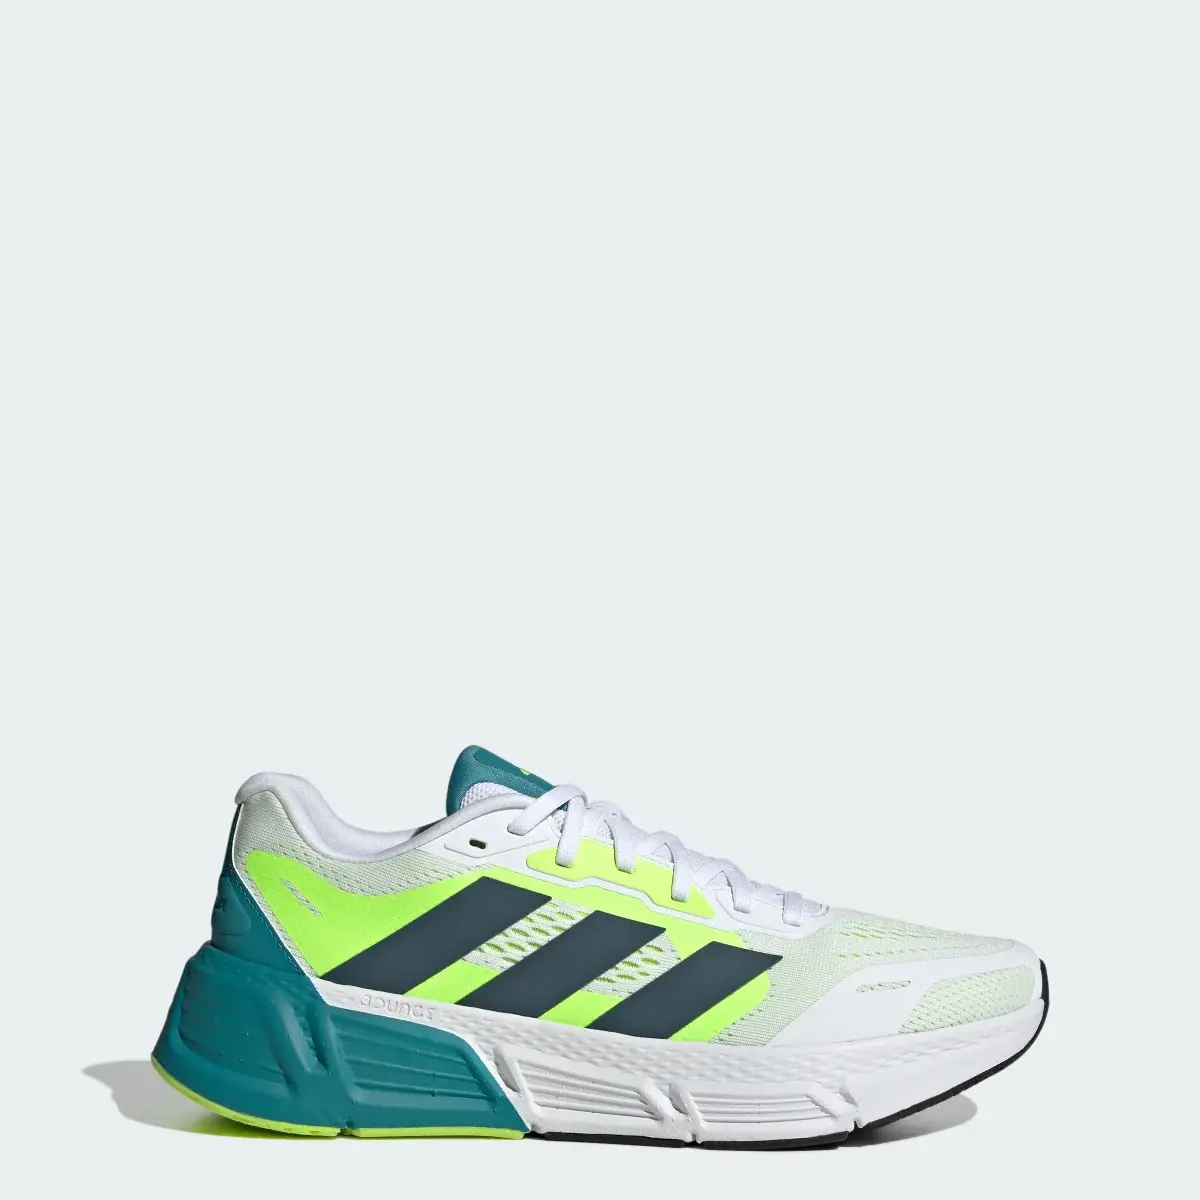 Adidas Questar Ayakkabı. 1